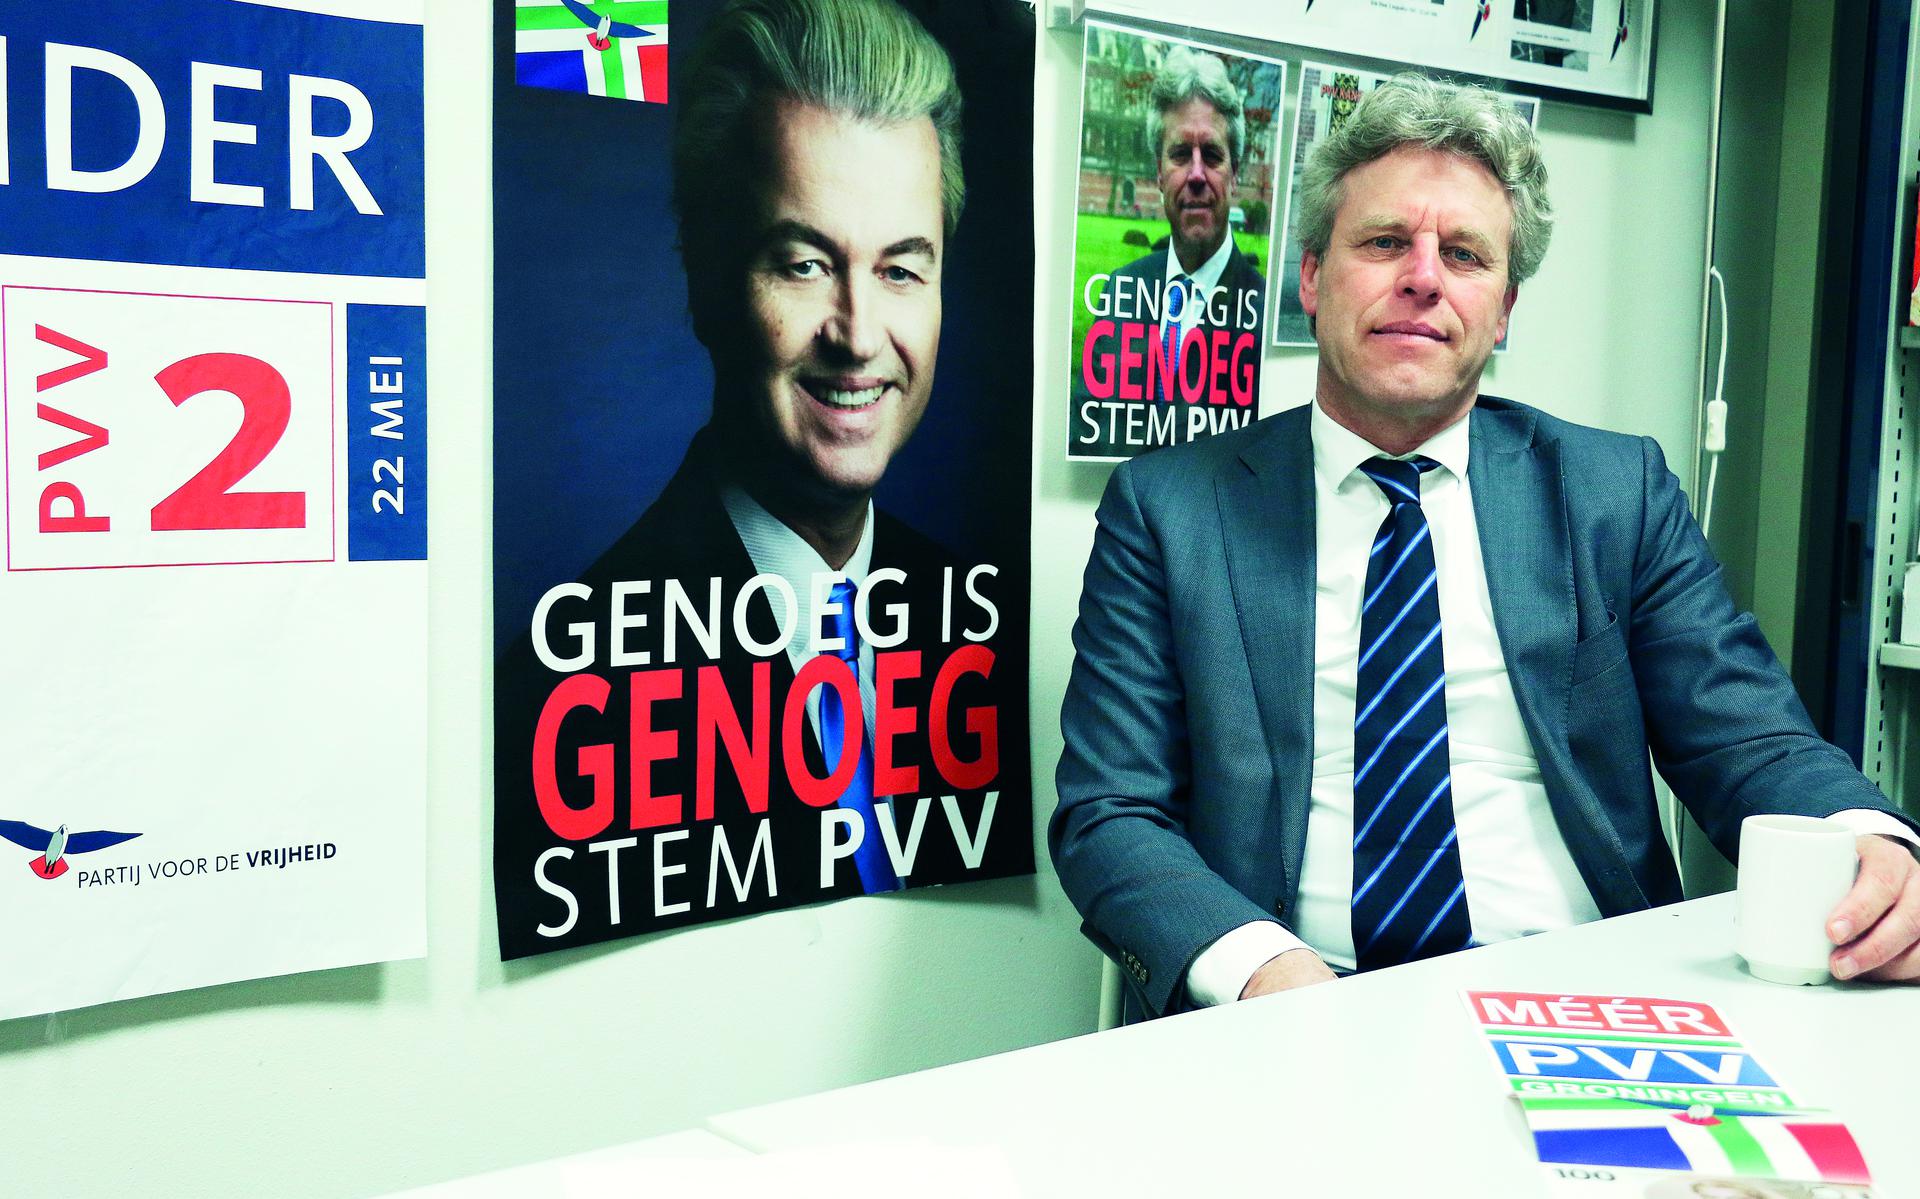 Ton van Kesteren voert de PVV in de provincie Groningen aan.